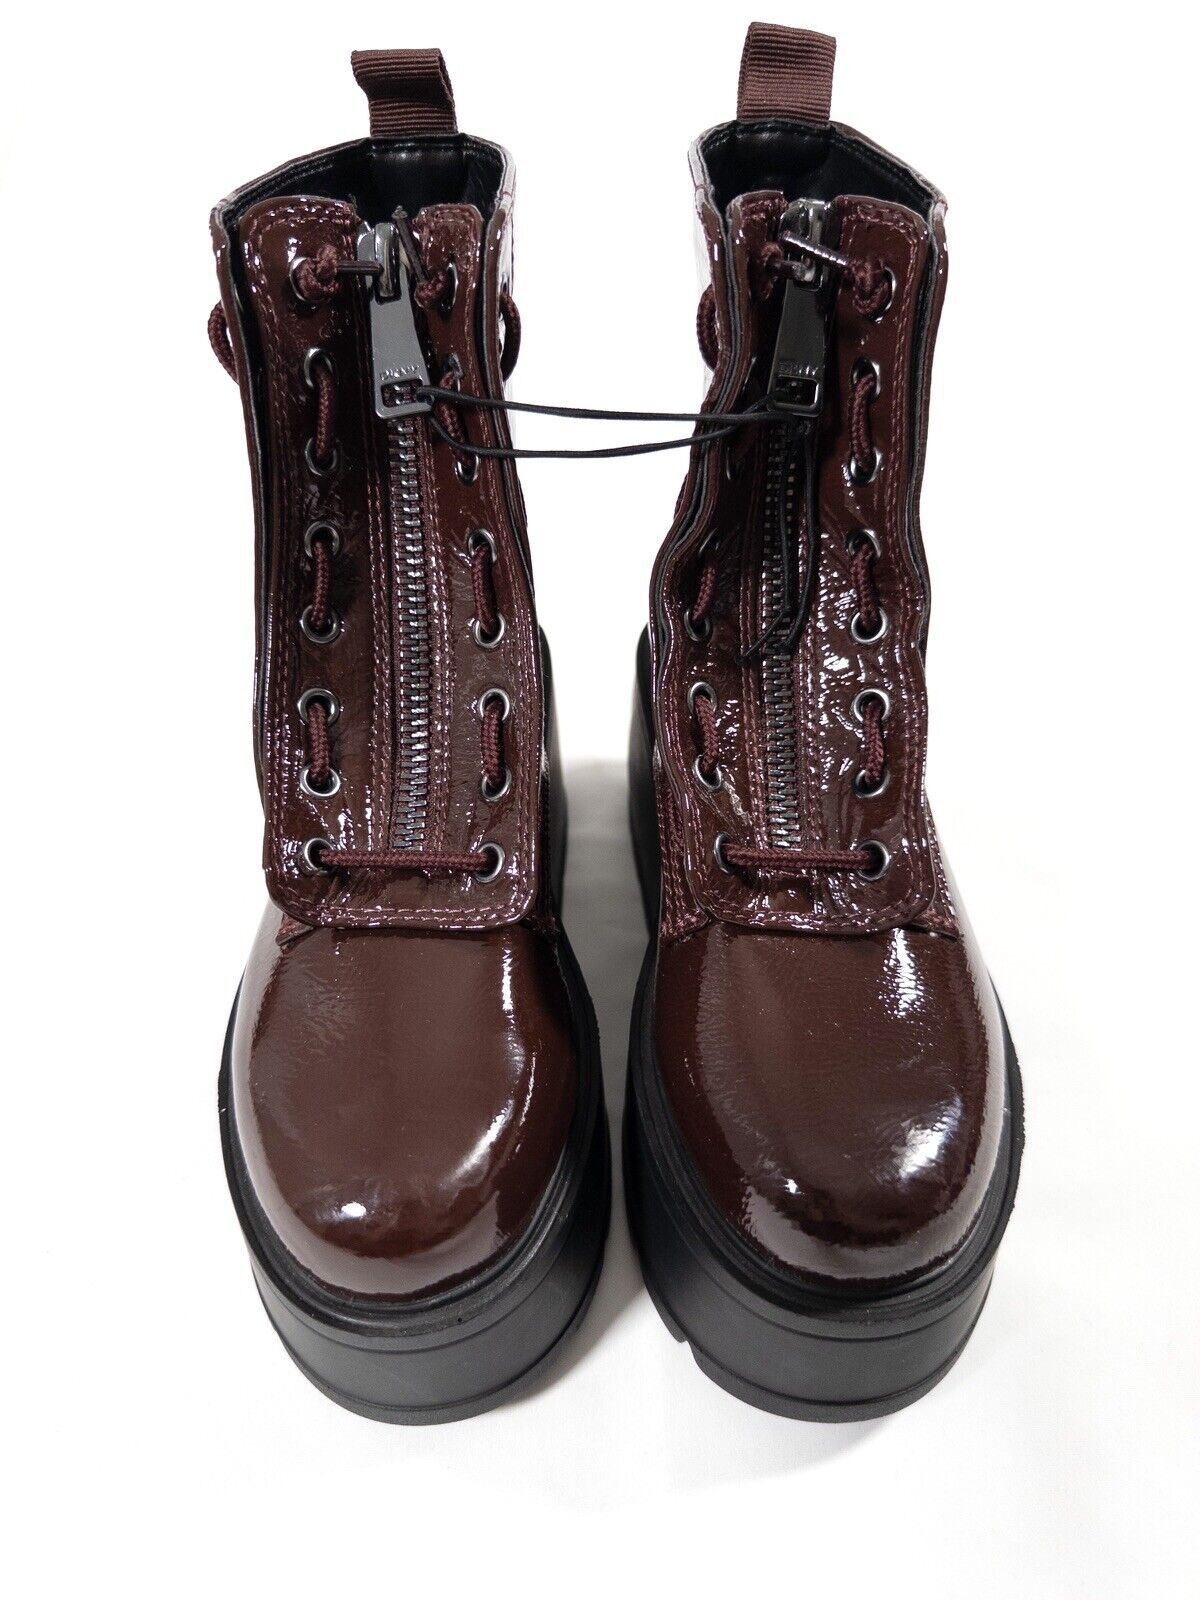 DKNY Women's Chunky Platform Patent Ankle Boots Burgundy Size UK 3